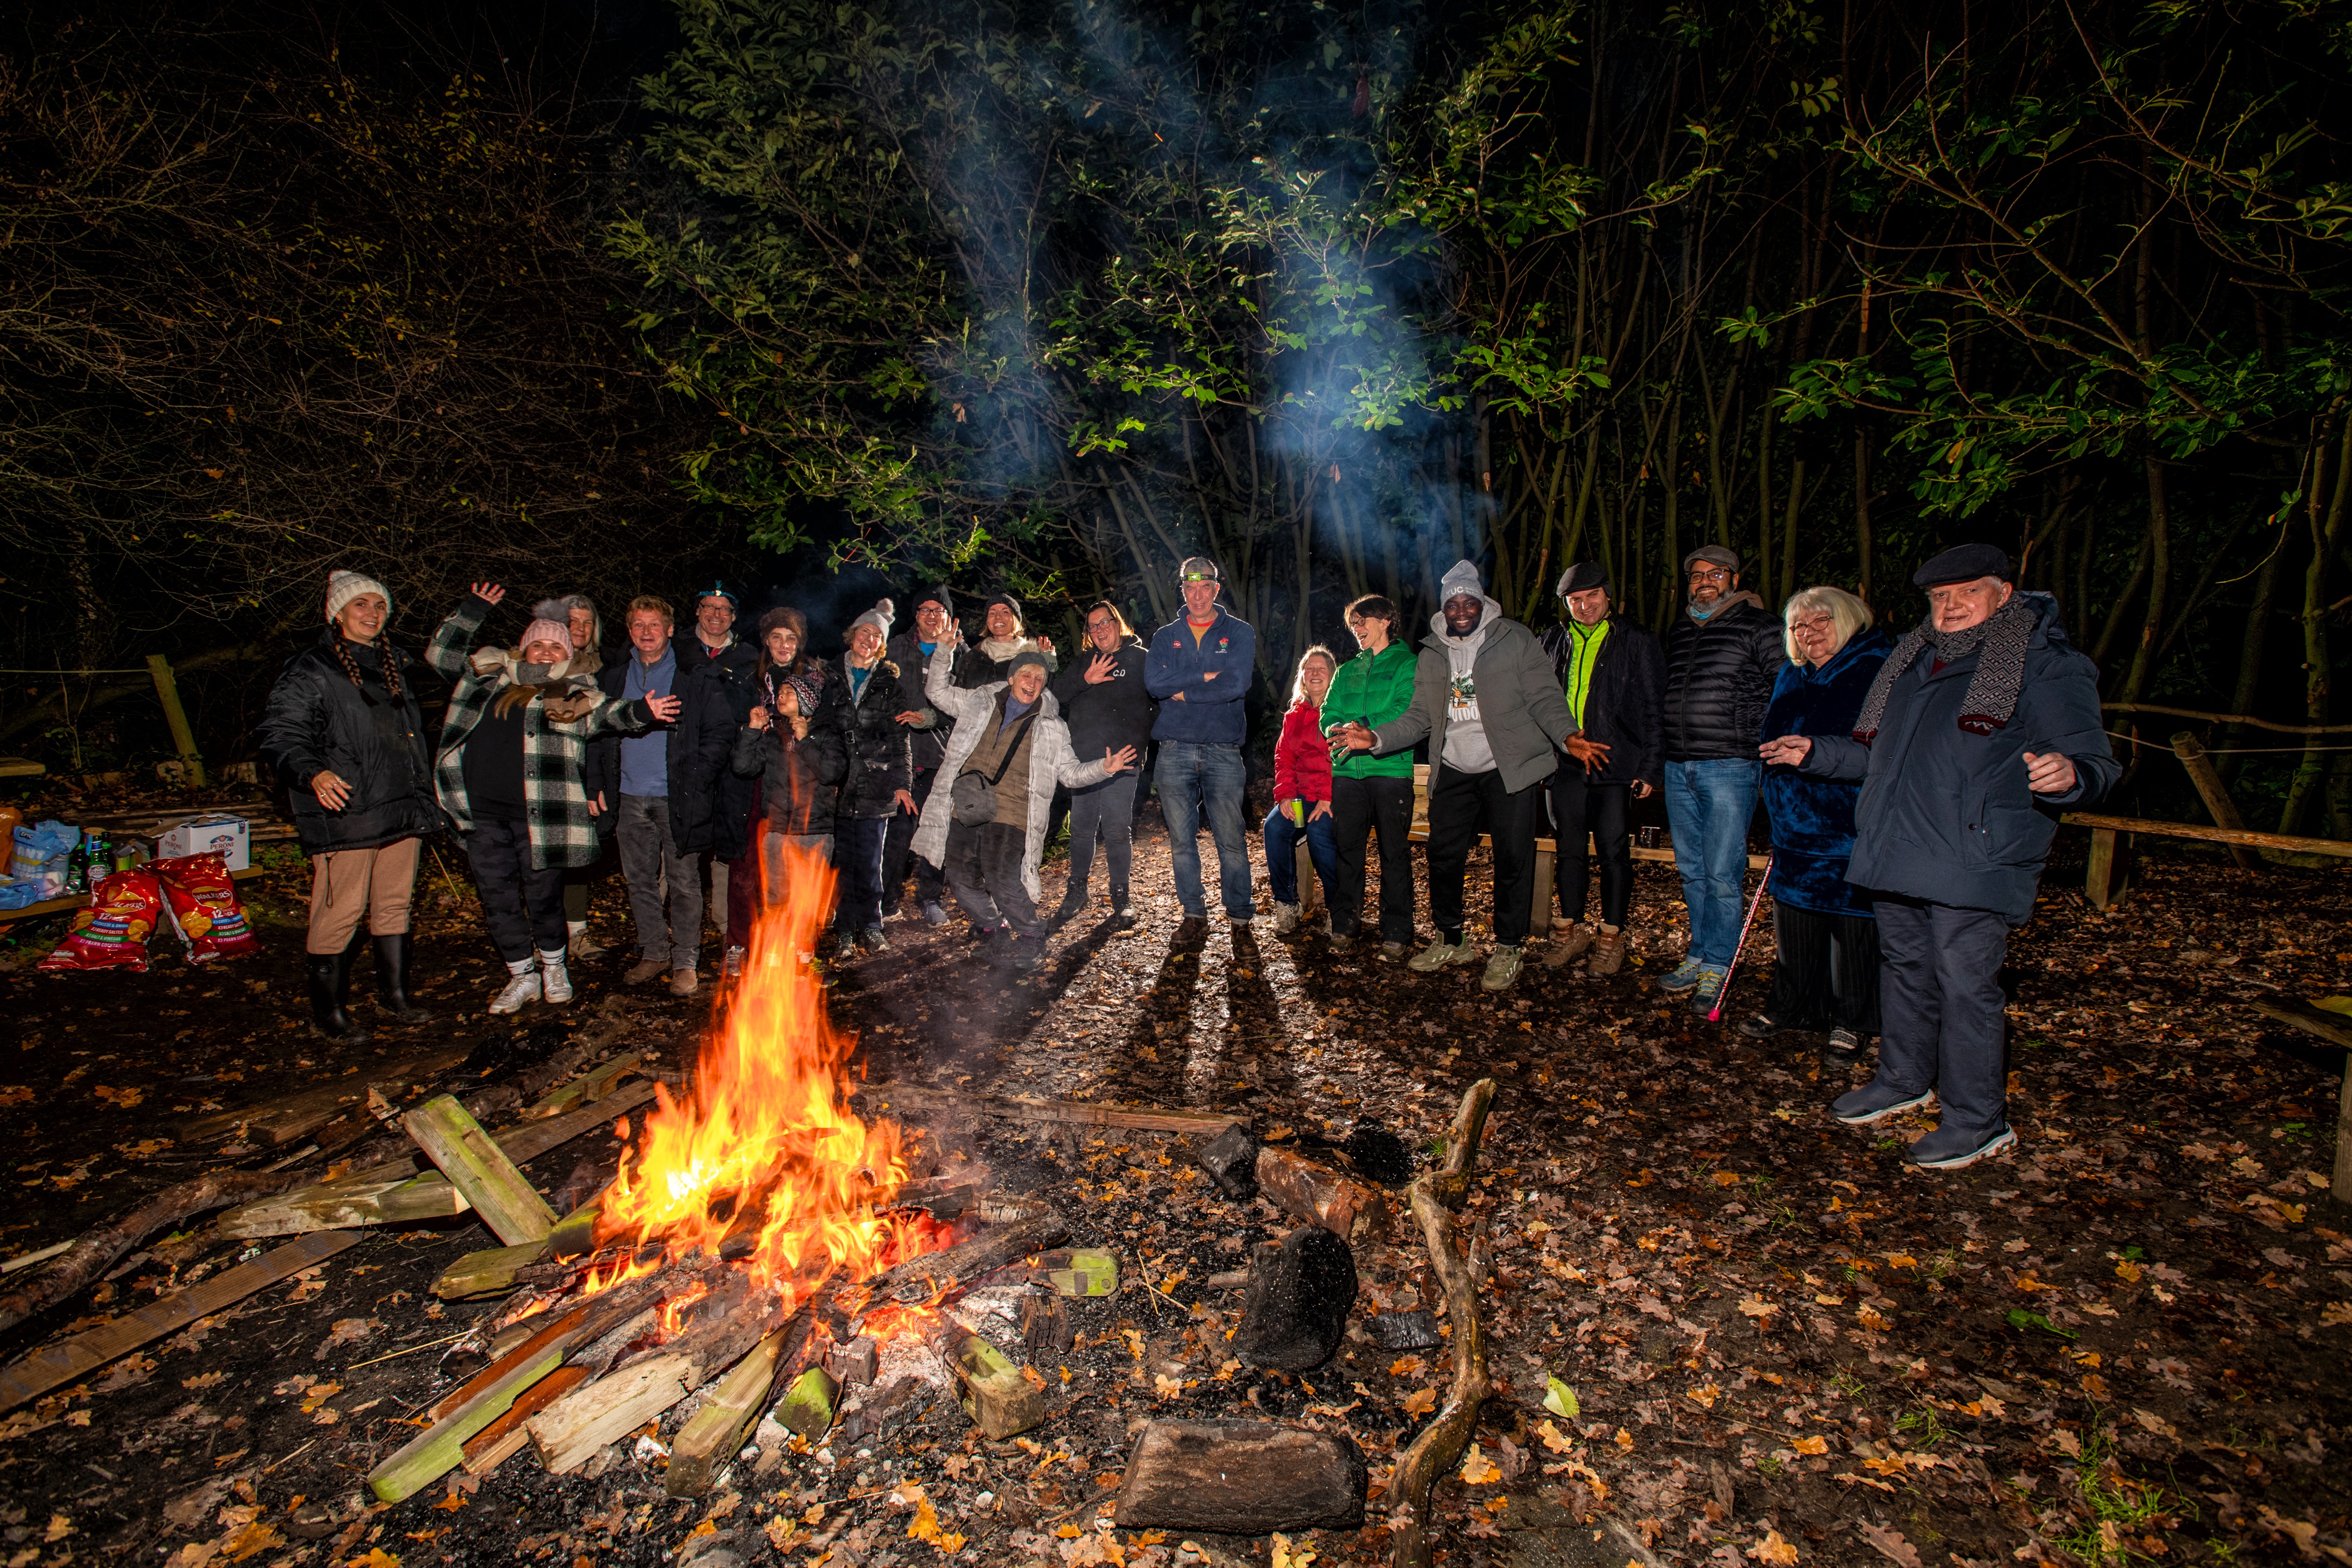 Adults gathered around a bonfire